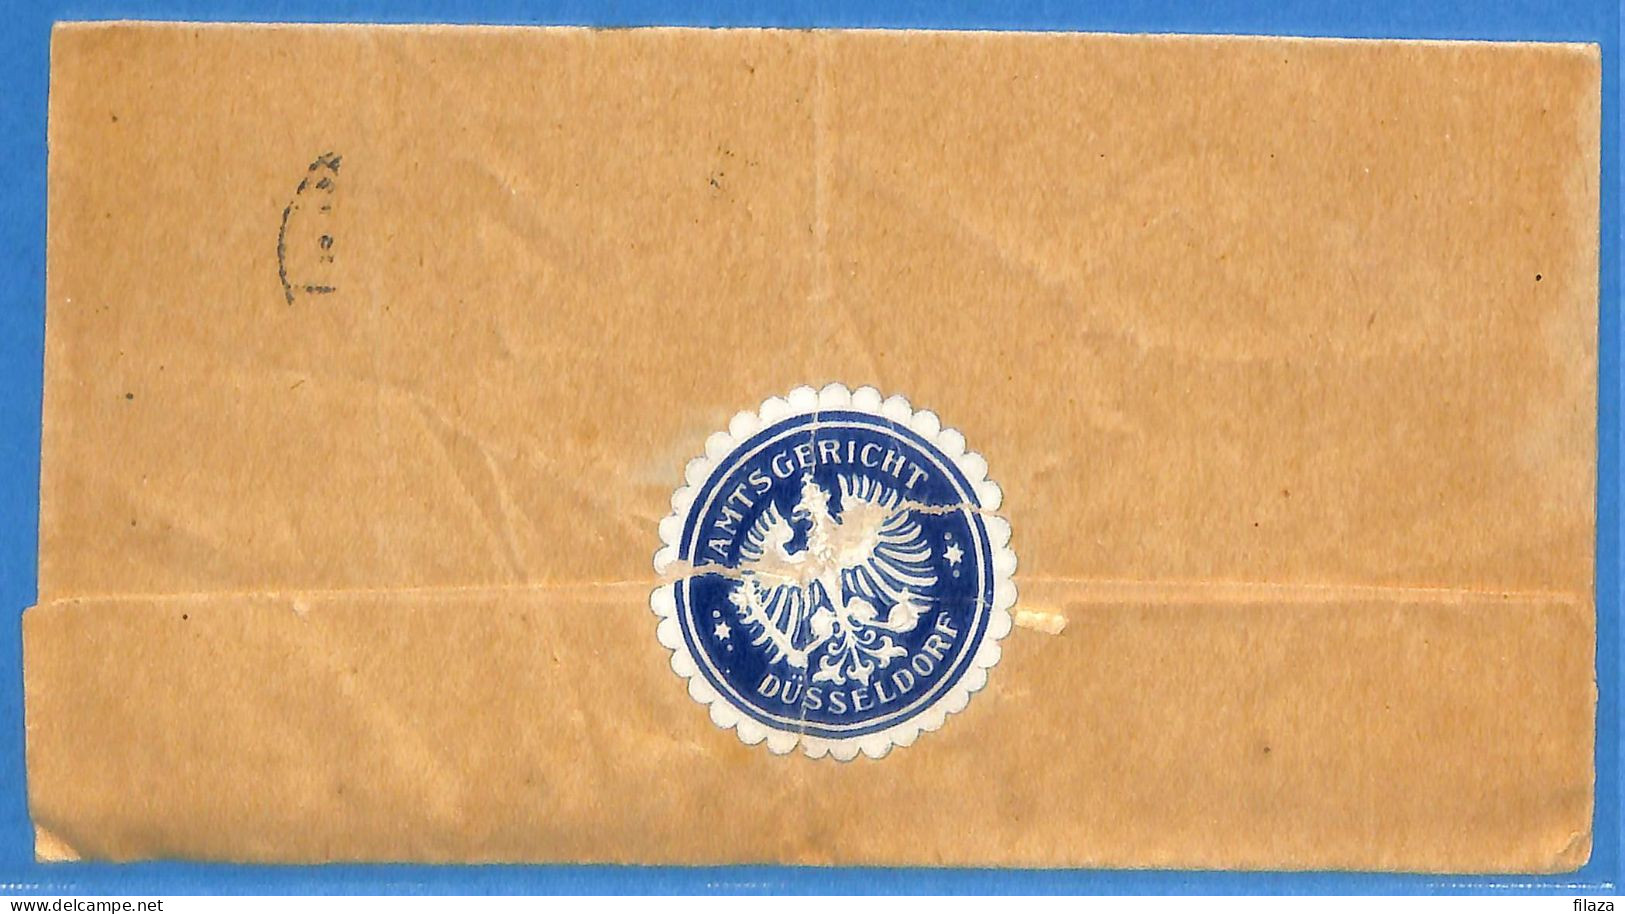 Allemagne Reich 1922 - Lettre De Dusseldorf - G33427 - Lettres & Documents